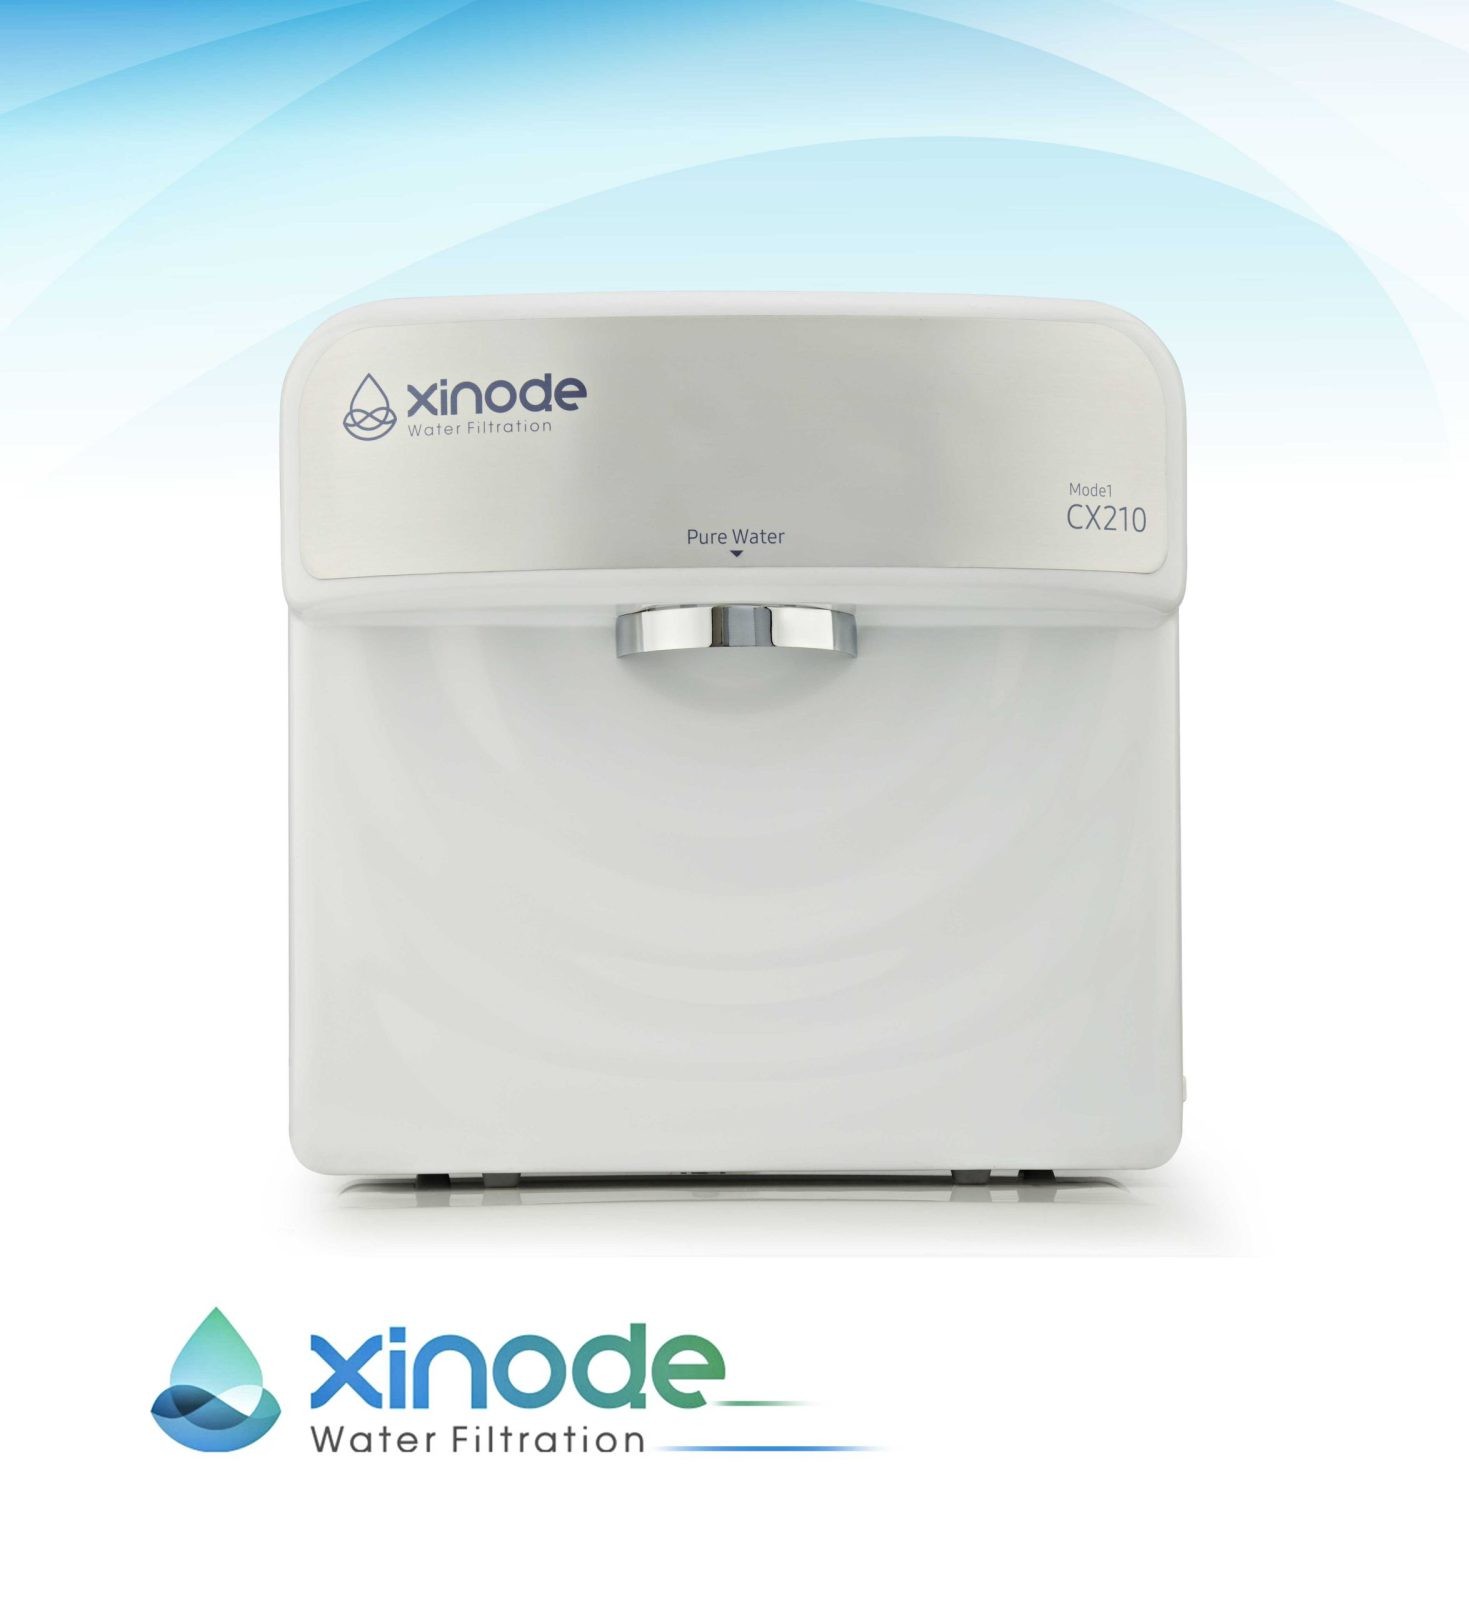 دستگاه تصفیه آب رومیزی زینود Xinode مدل CX210